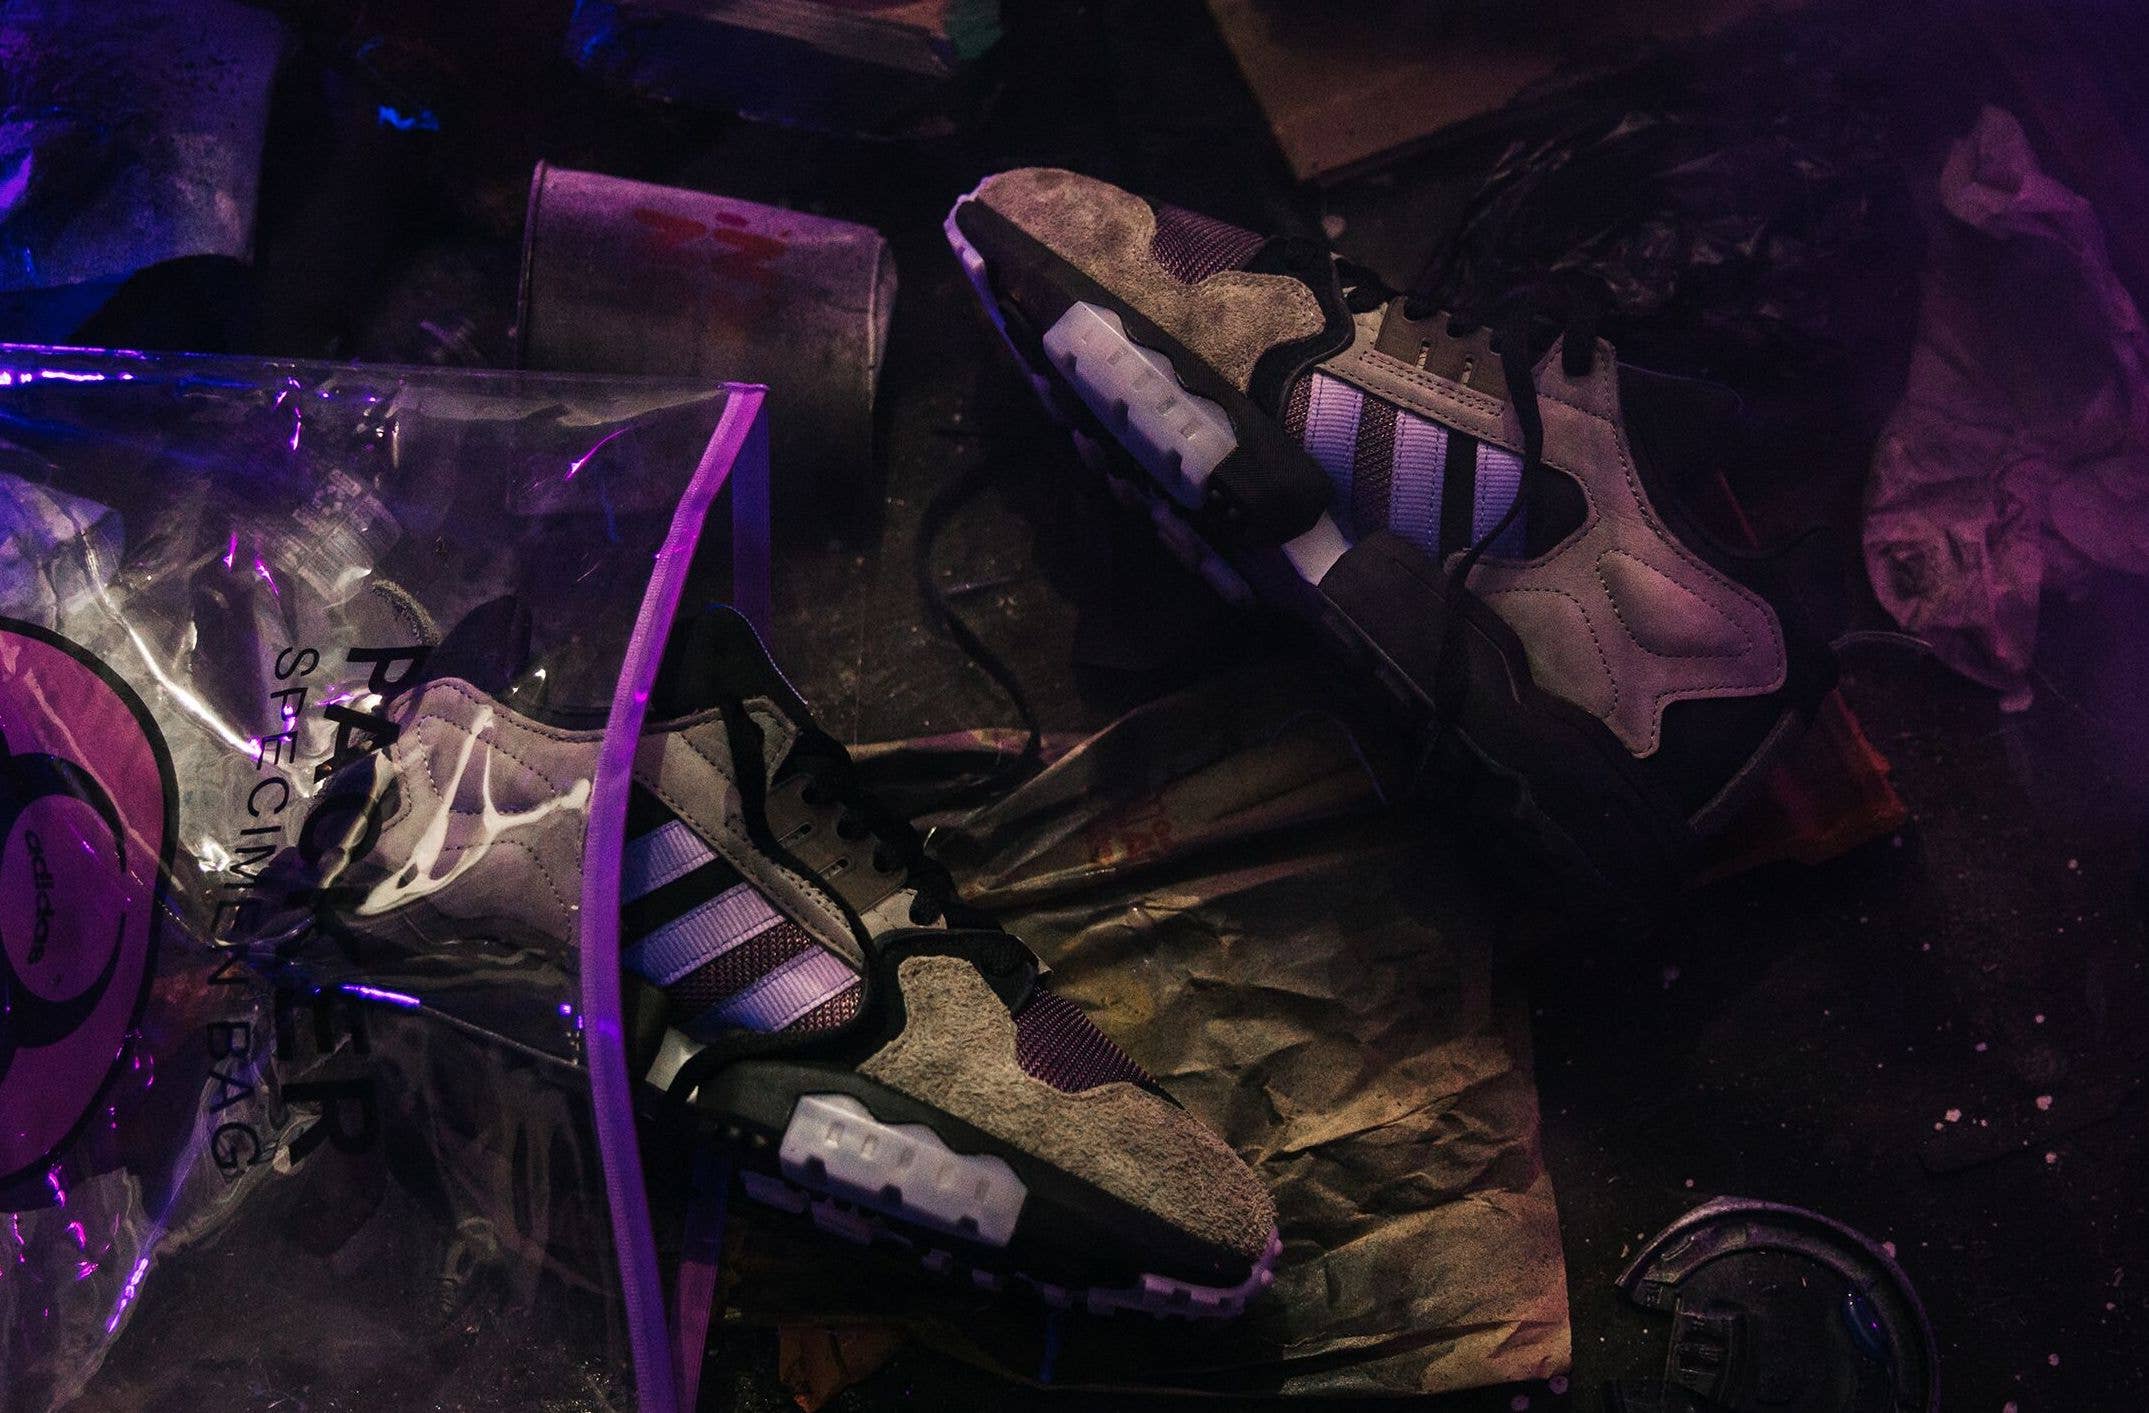 packer shoes adidas consortium zx torsion mega violet